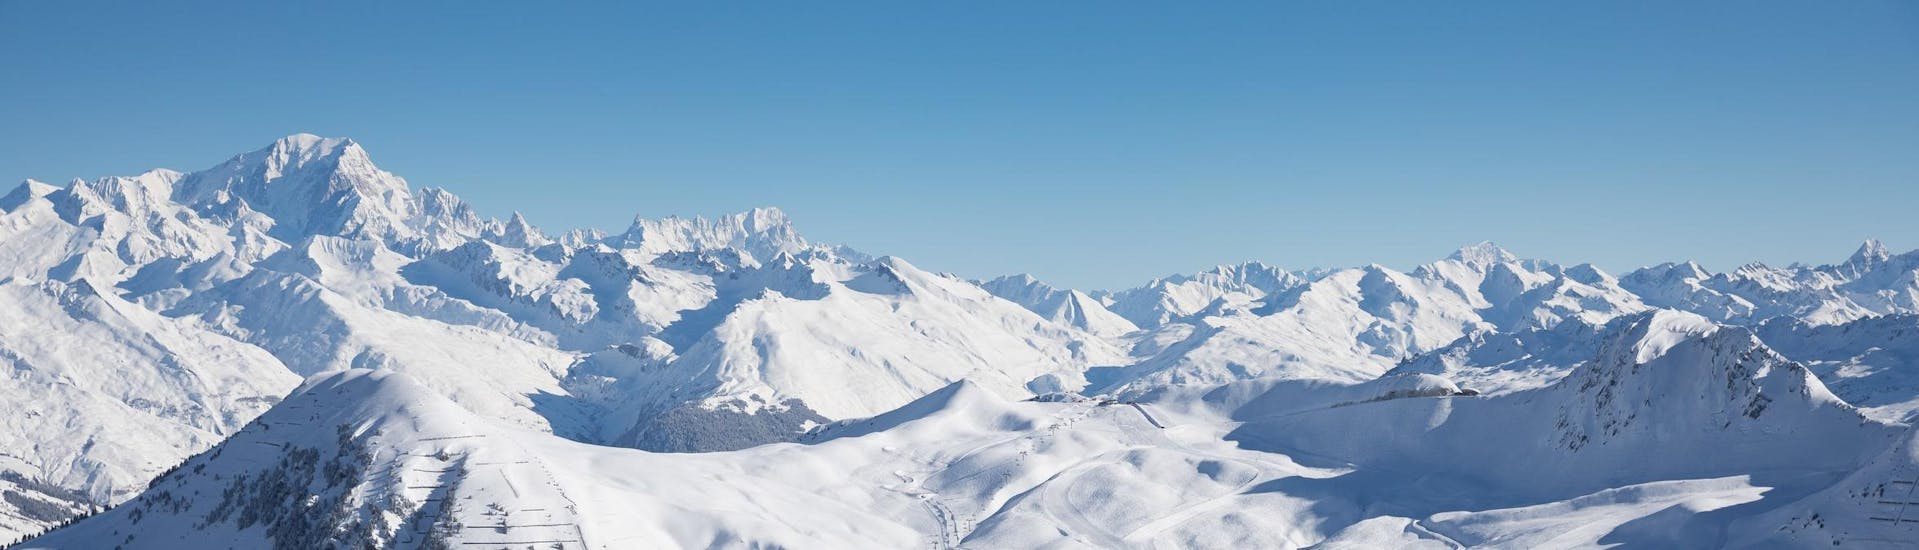 View of the snow capped mountains of La Plagne ski resorts where ski school provide ski lessons.